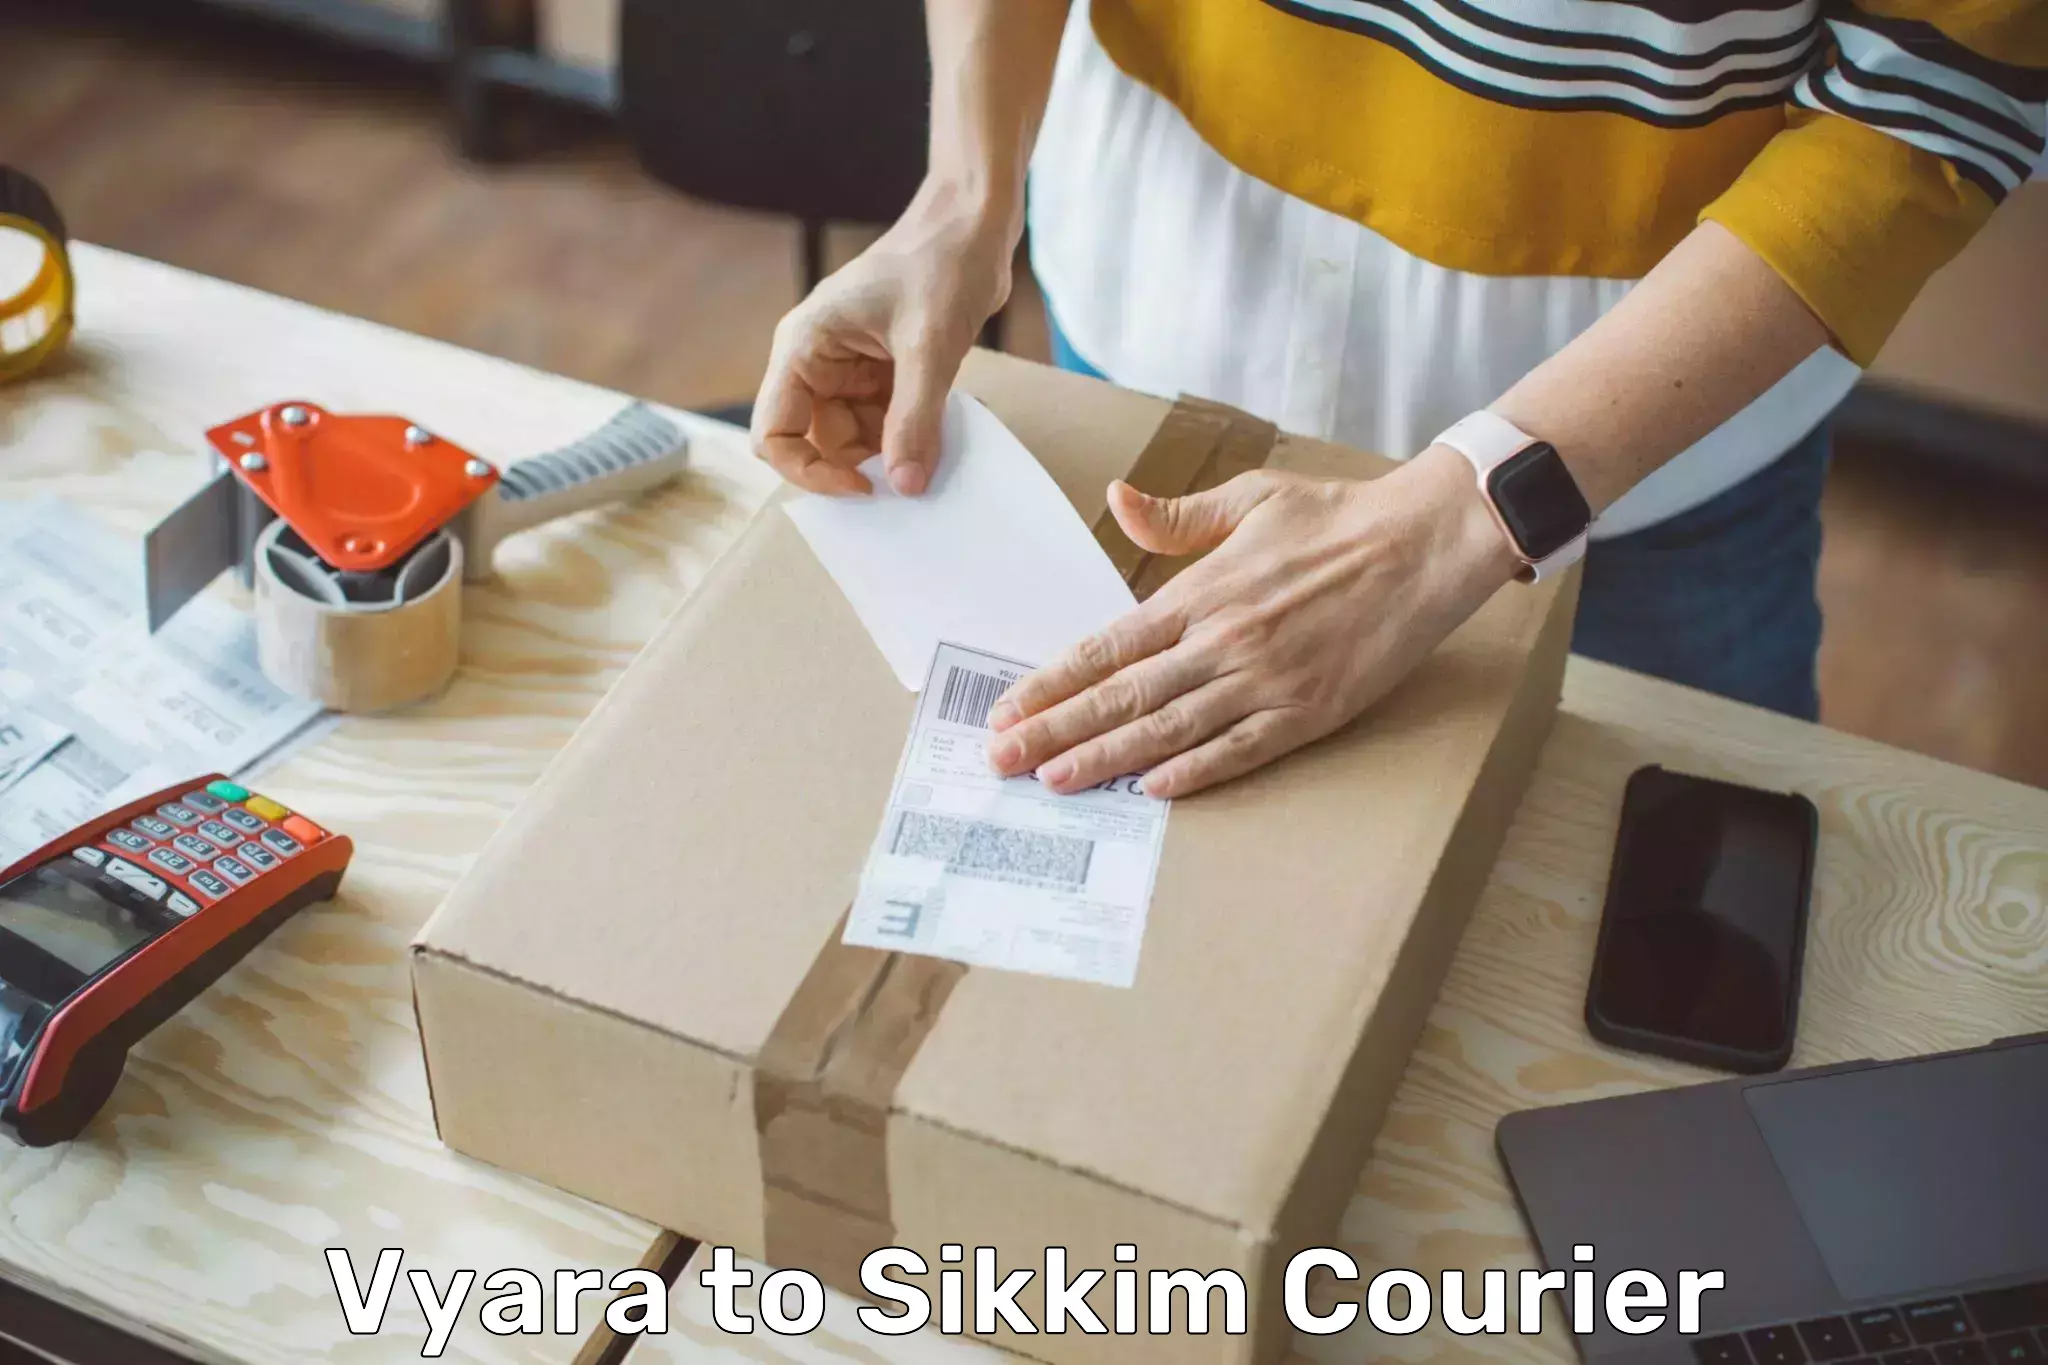 Professional courier services Vyara to Mangan